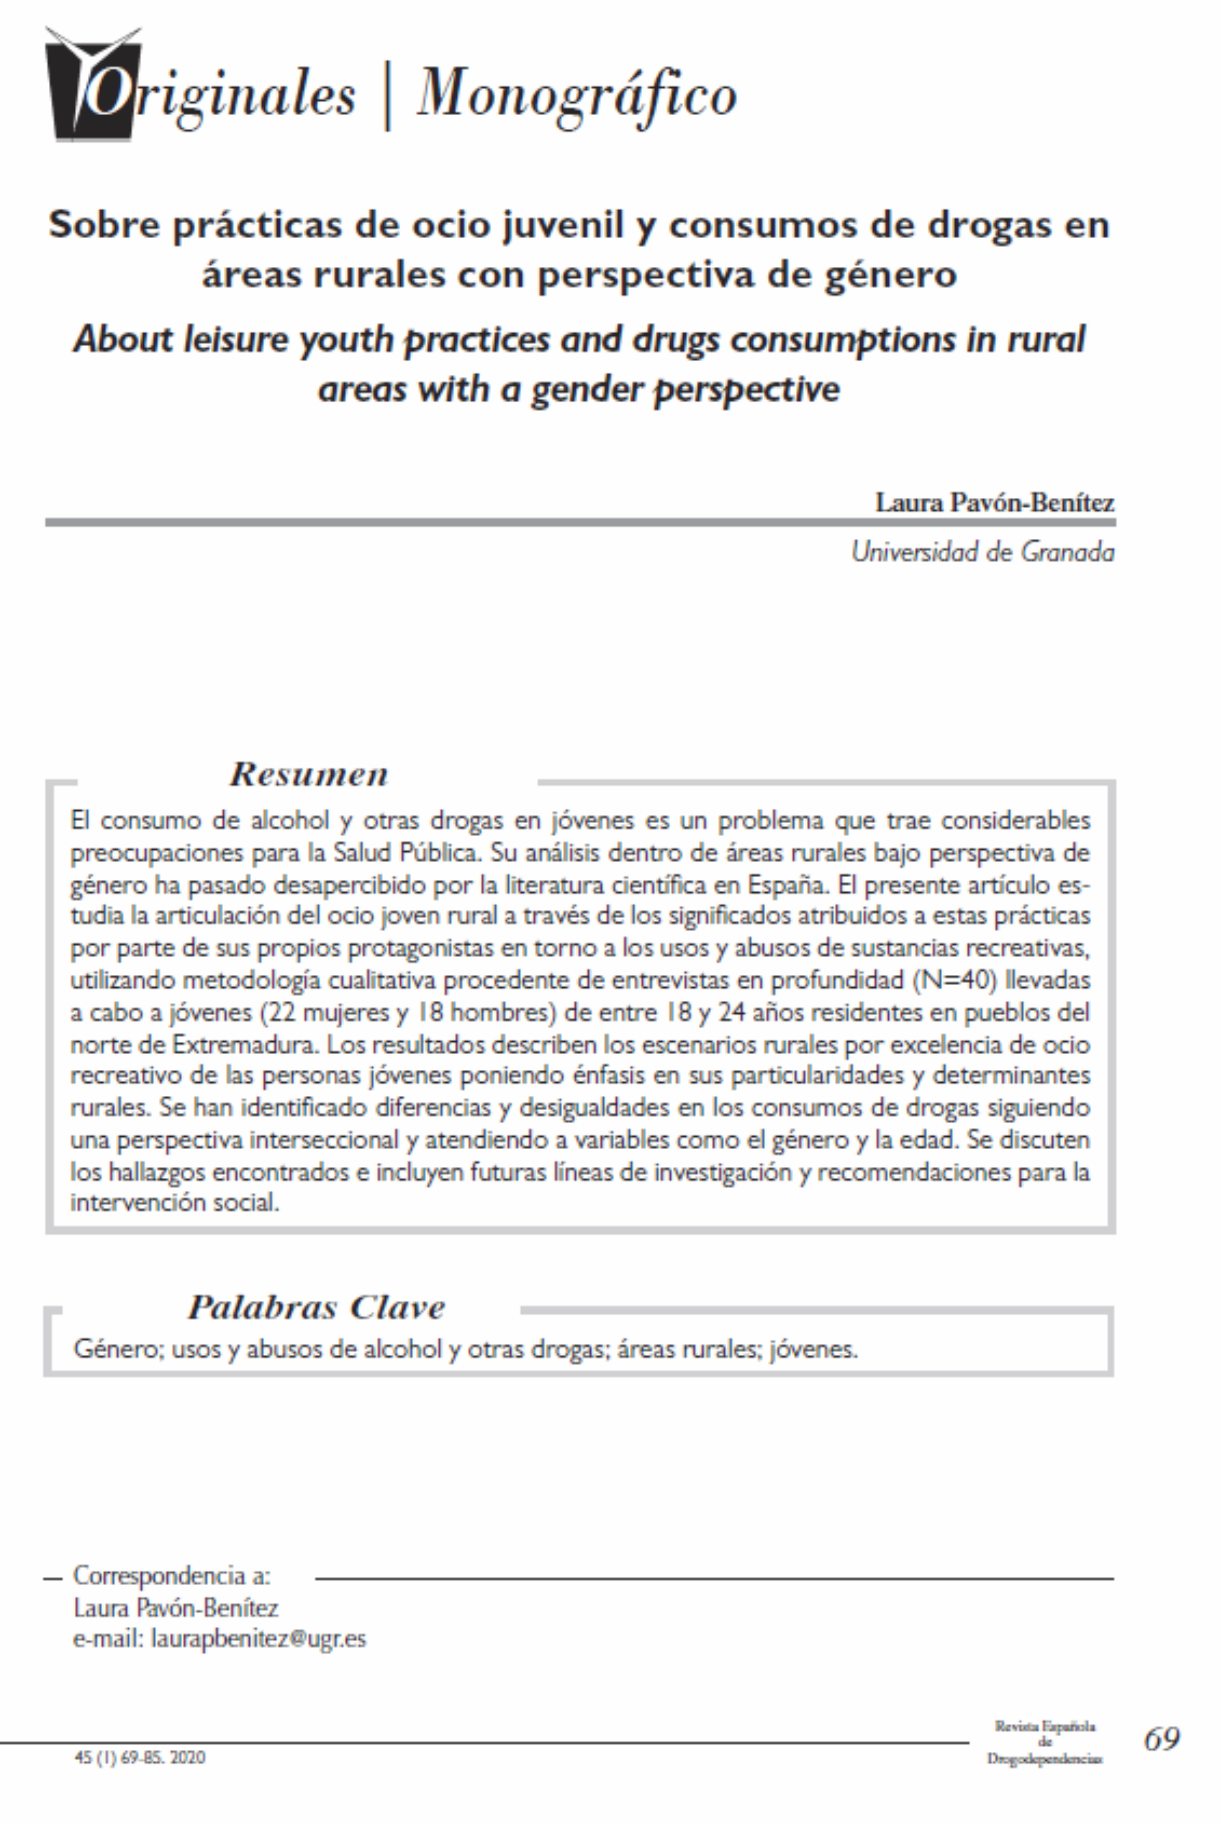 Pavón Benitez, Laura: Sobre prácticas de ocio juvenil y consumos de drogas en áreas rurales con perspectiva de género